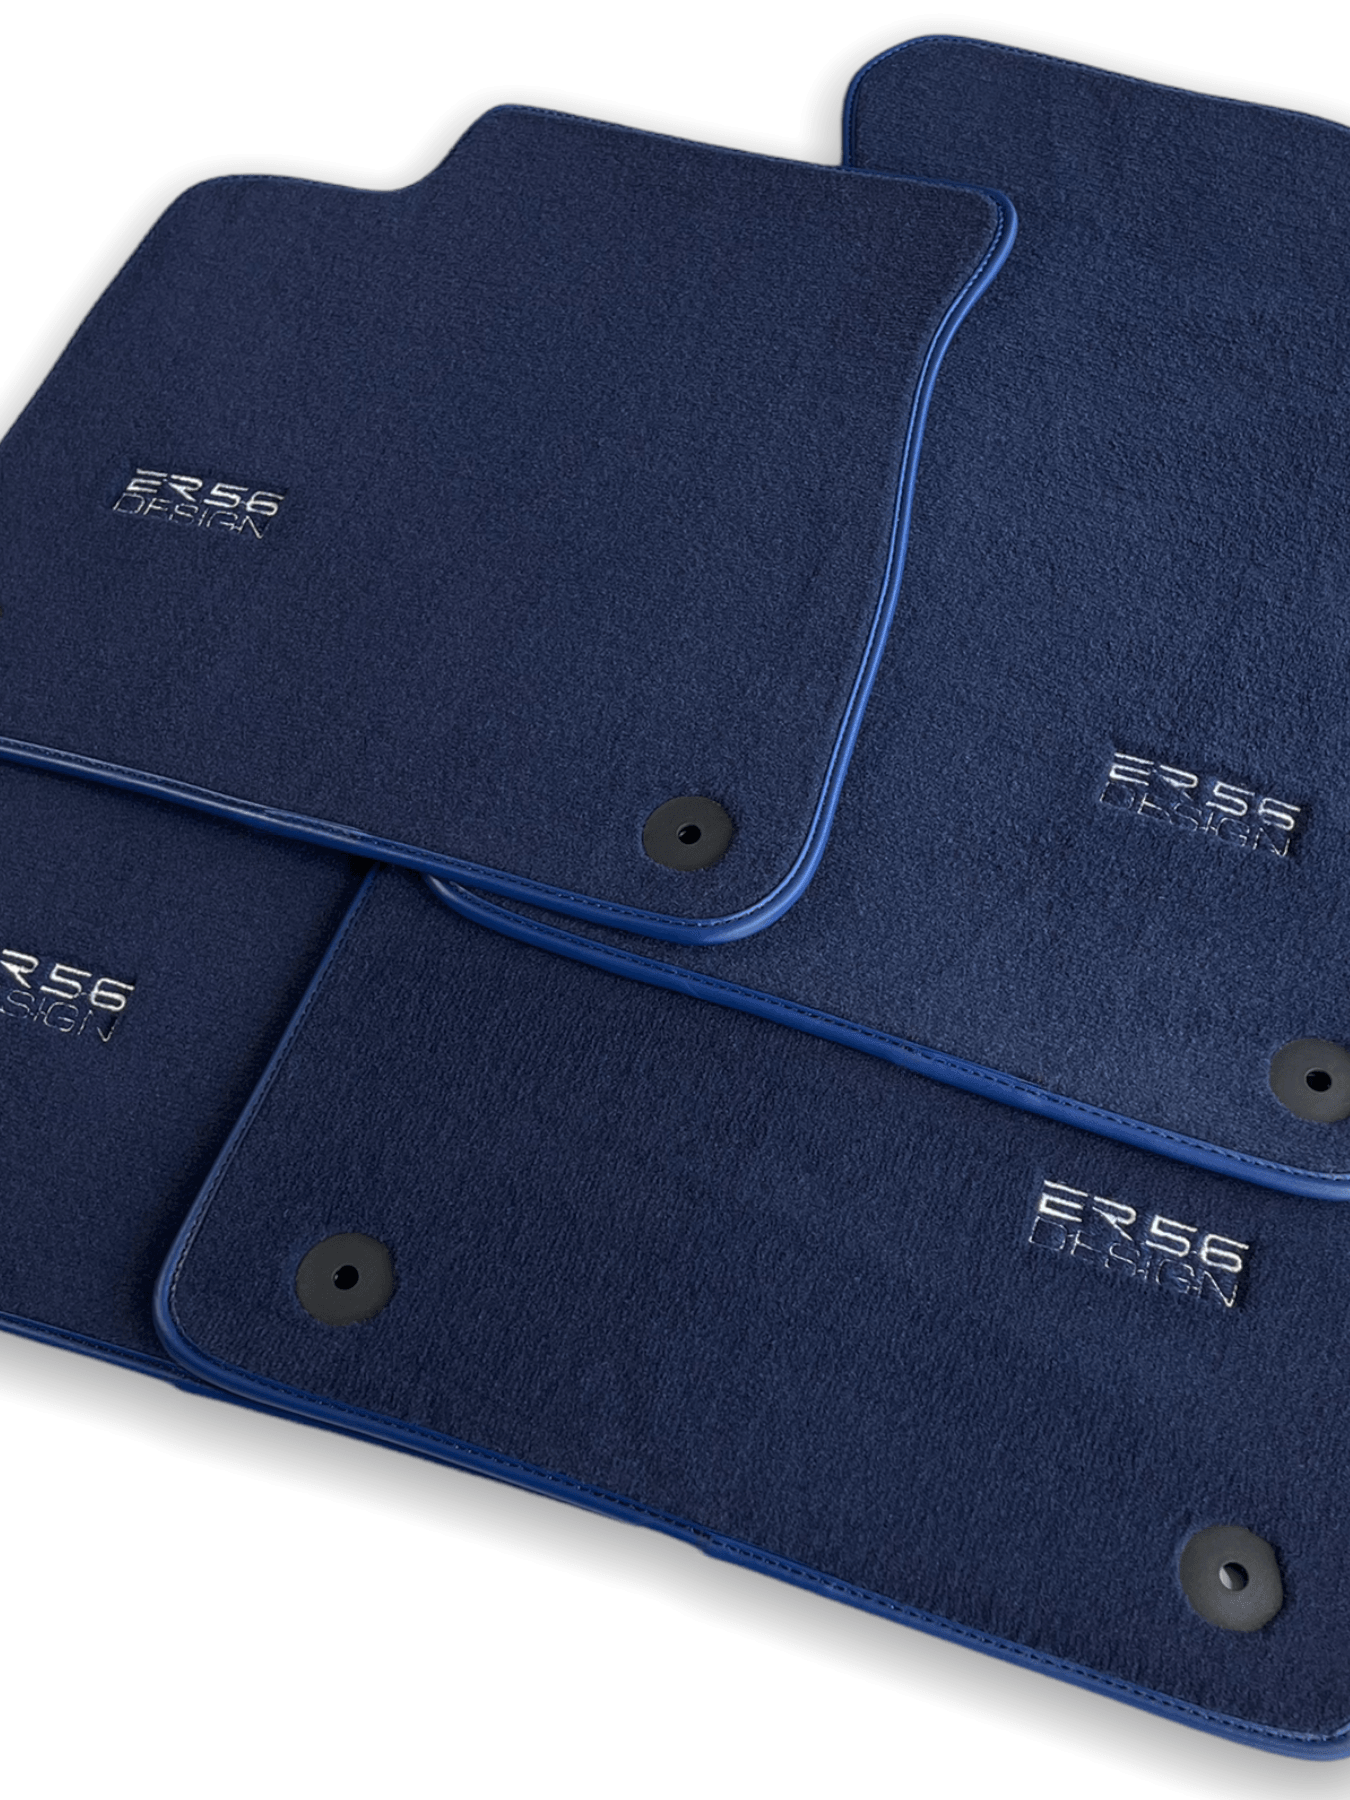 Dark Blue Floor Mats for Audi A6 - C7 Avant (2011-2018) | ER56 Design